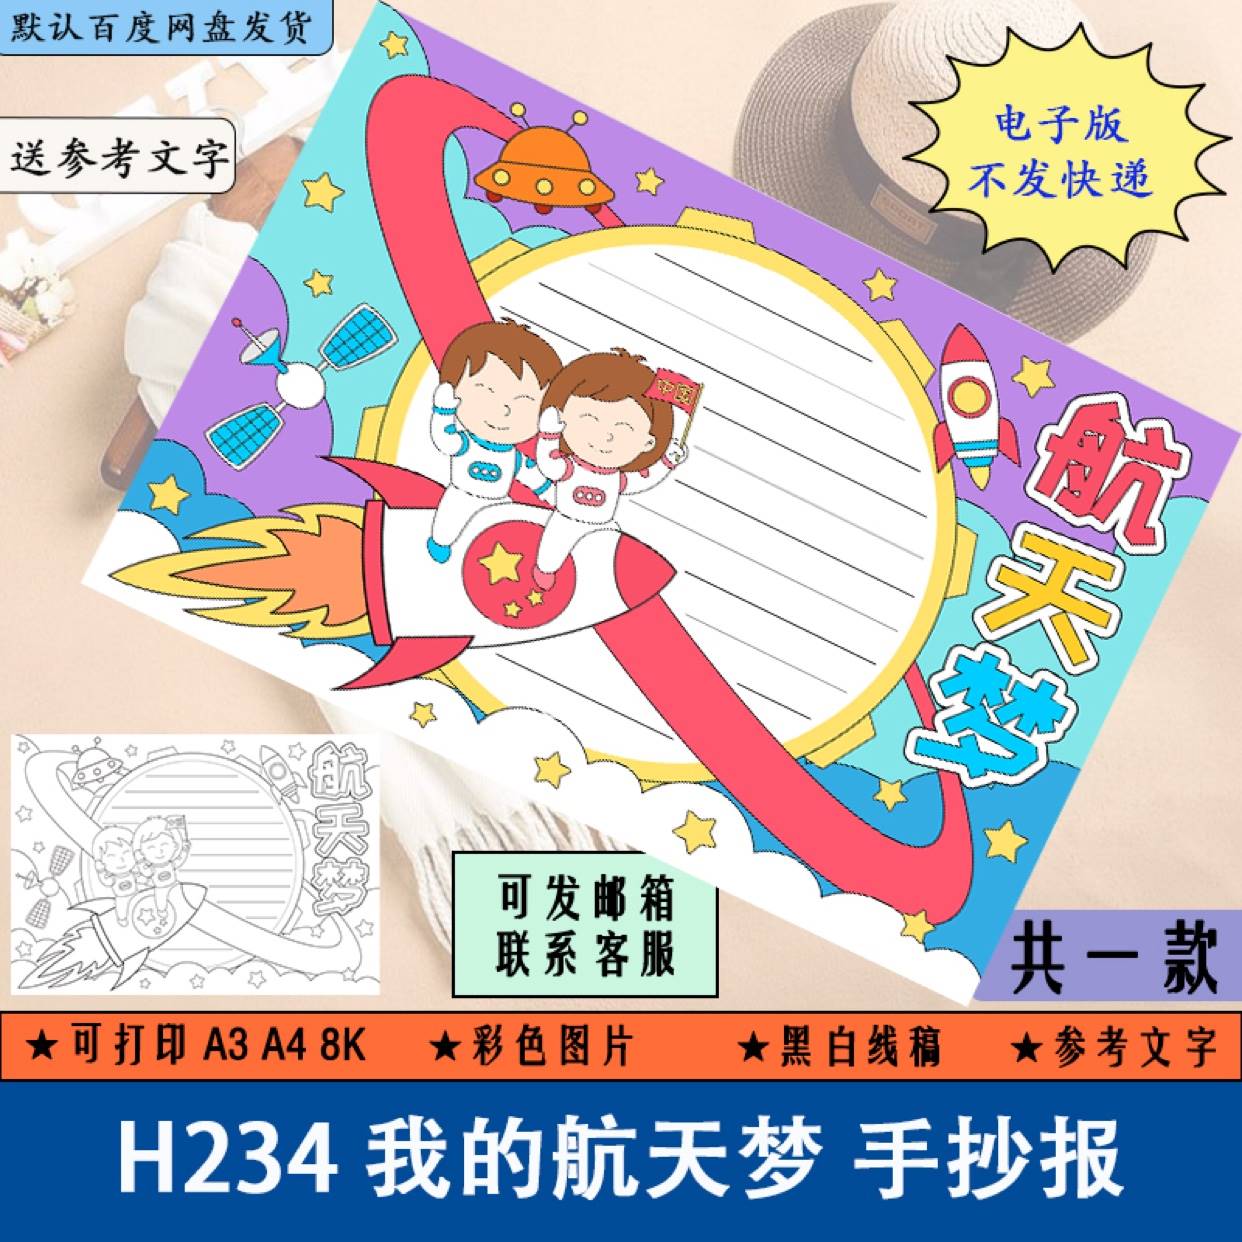 H234我的航天梦手抄报电子版中国航天日科技与未来我爱科学素材A4